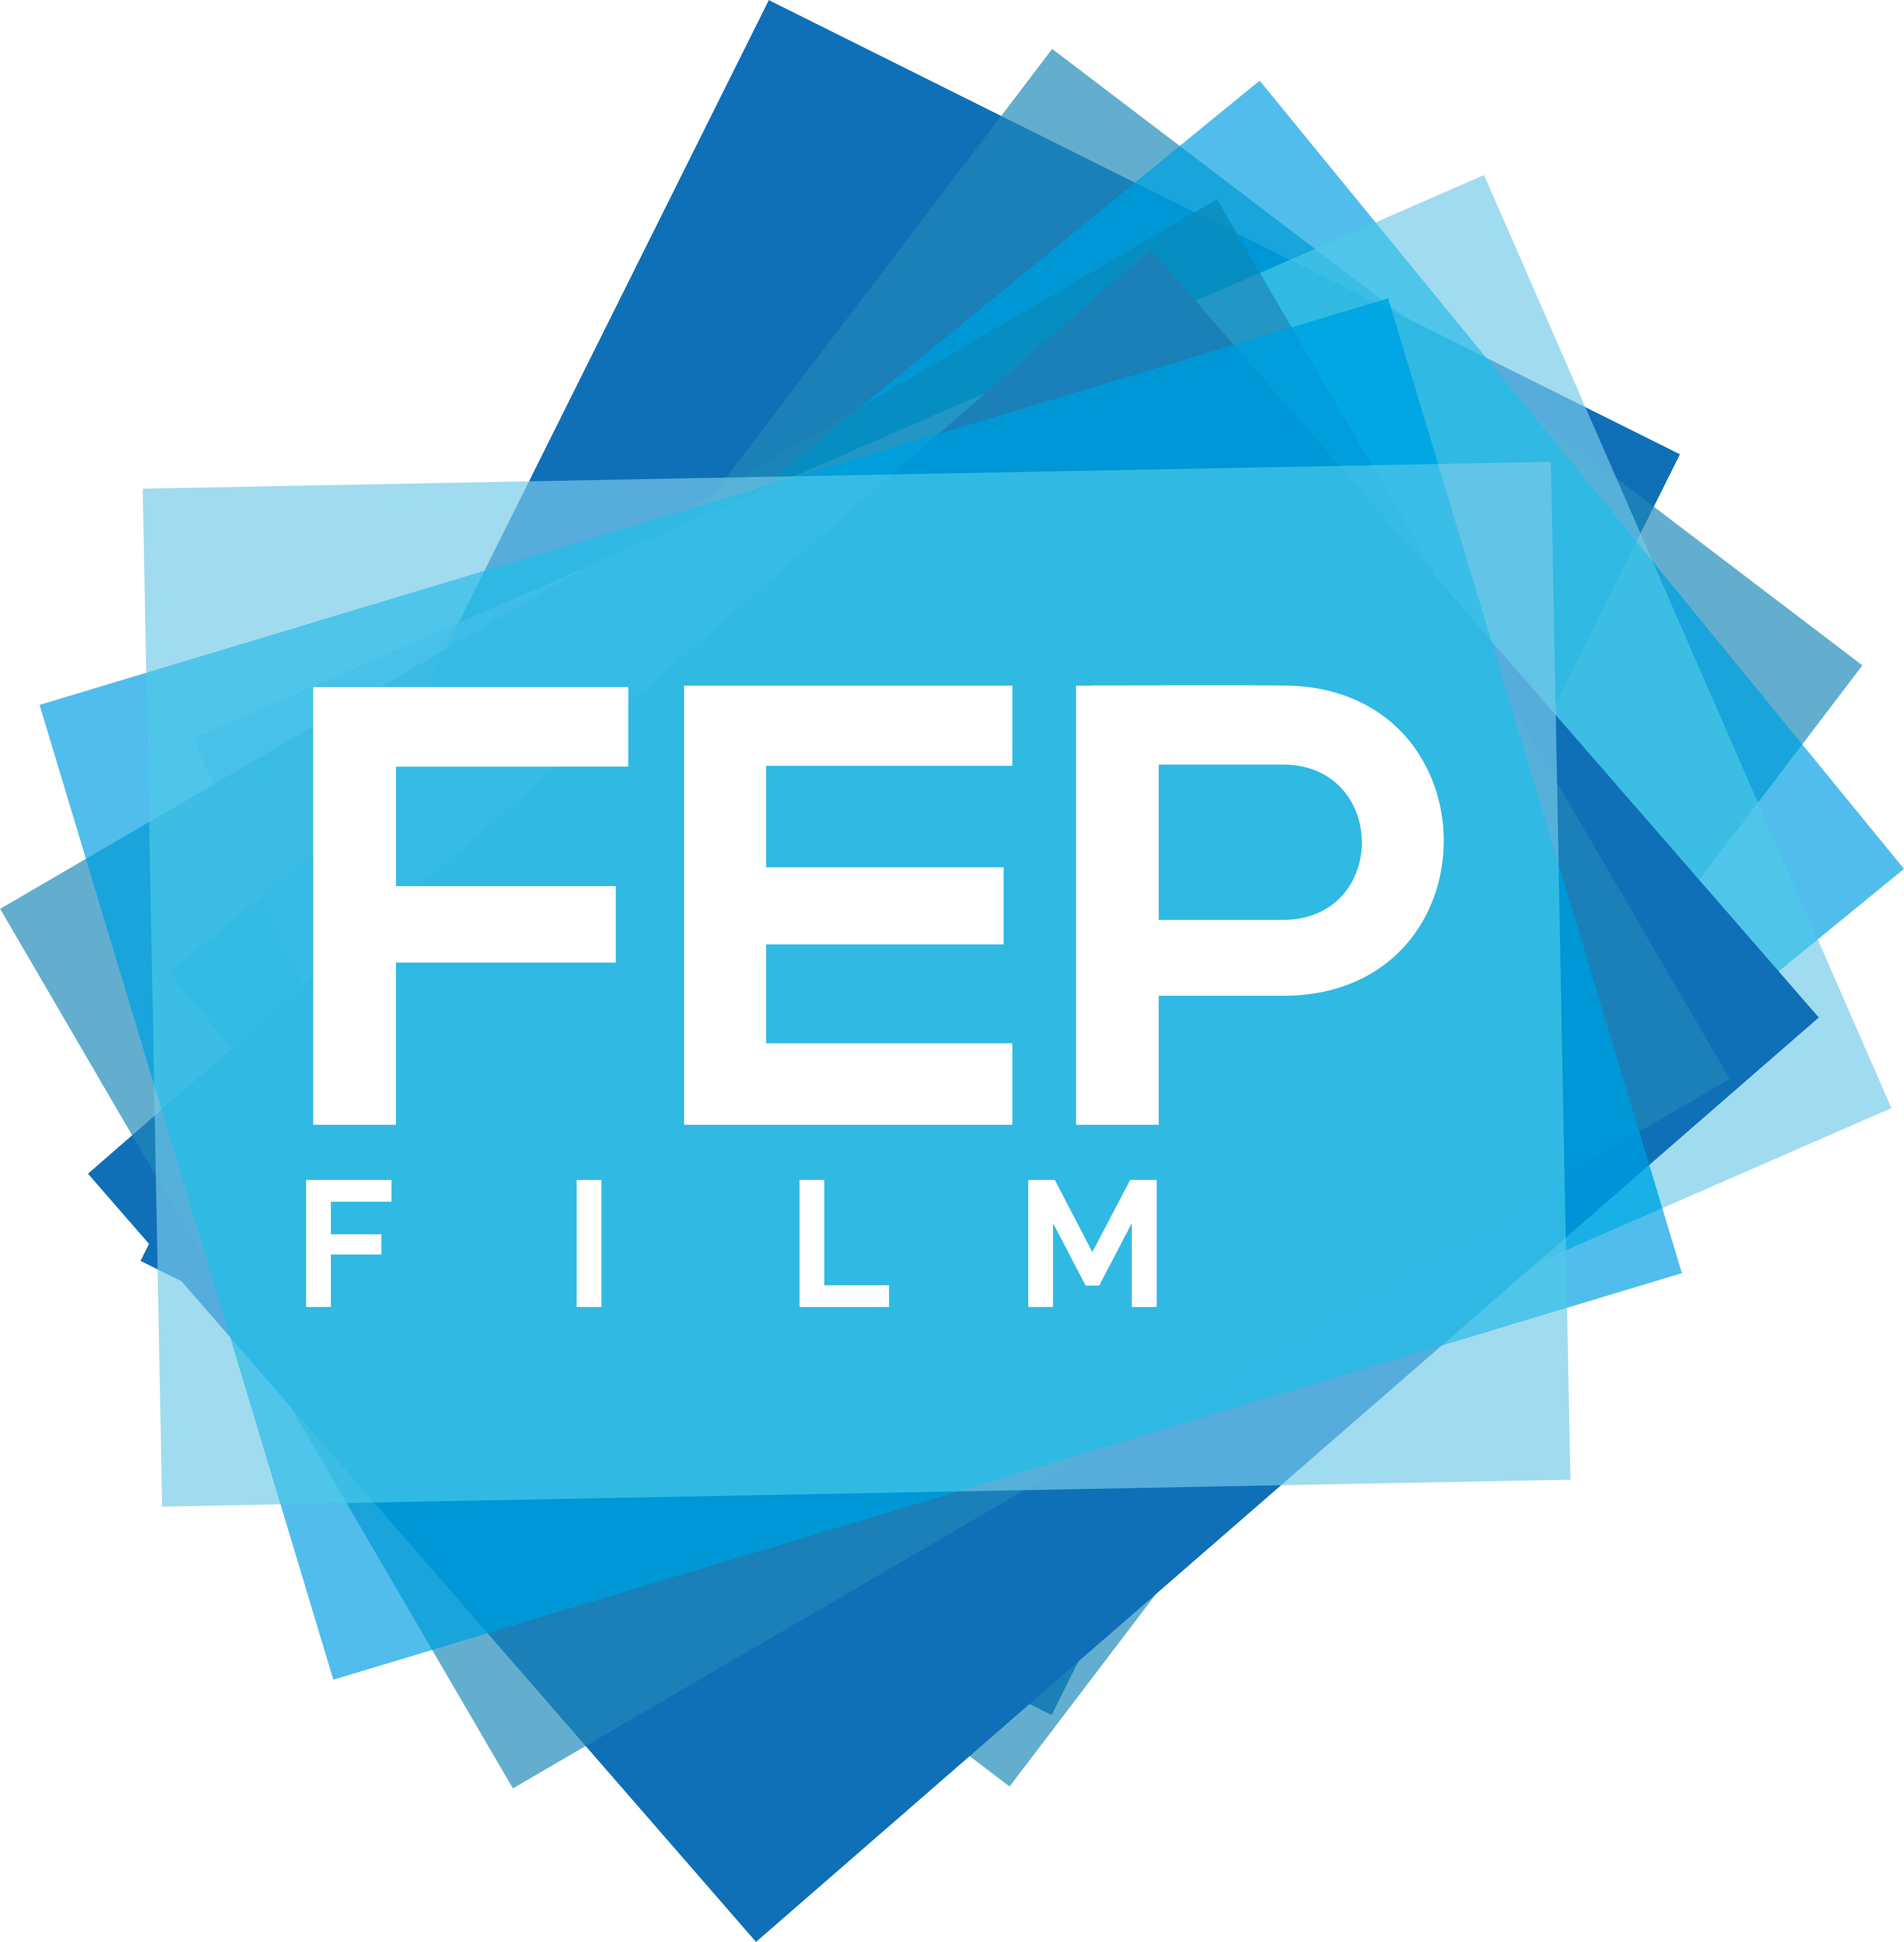 FEP Film